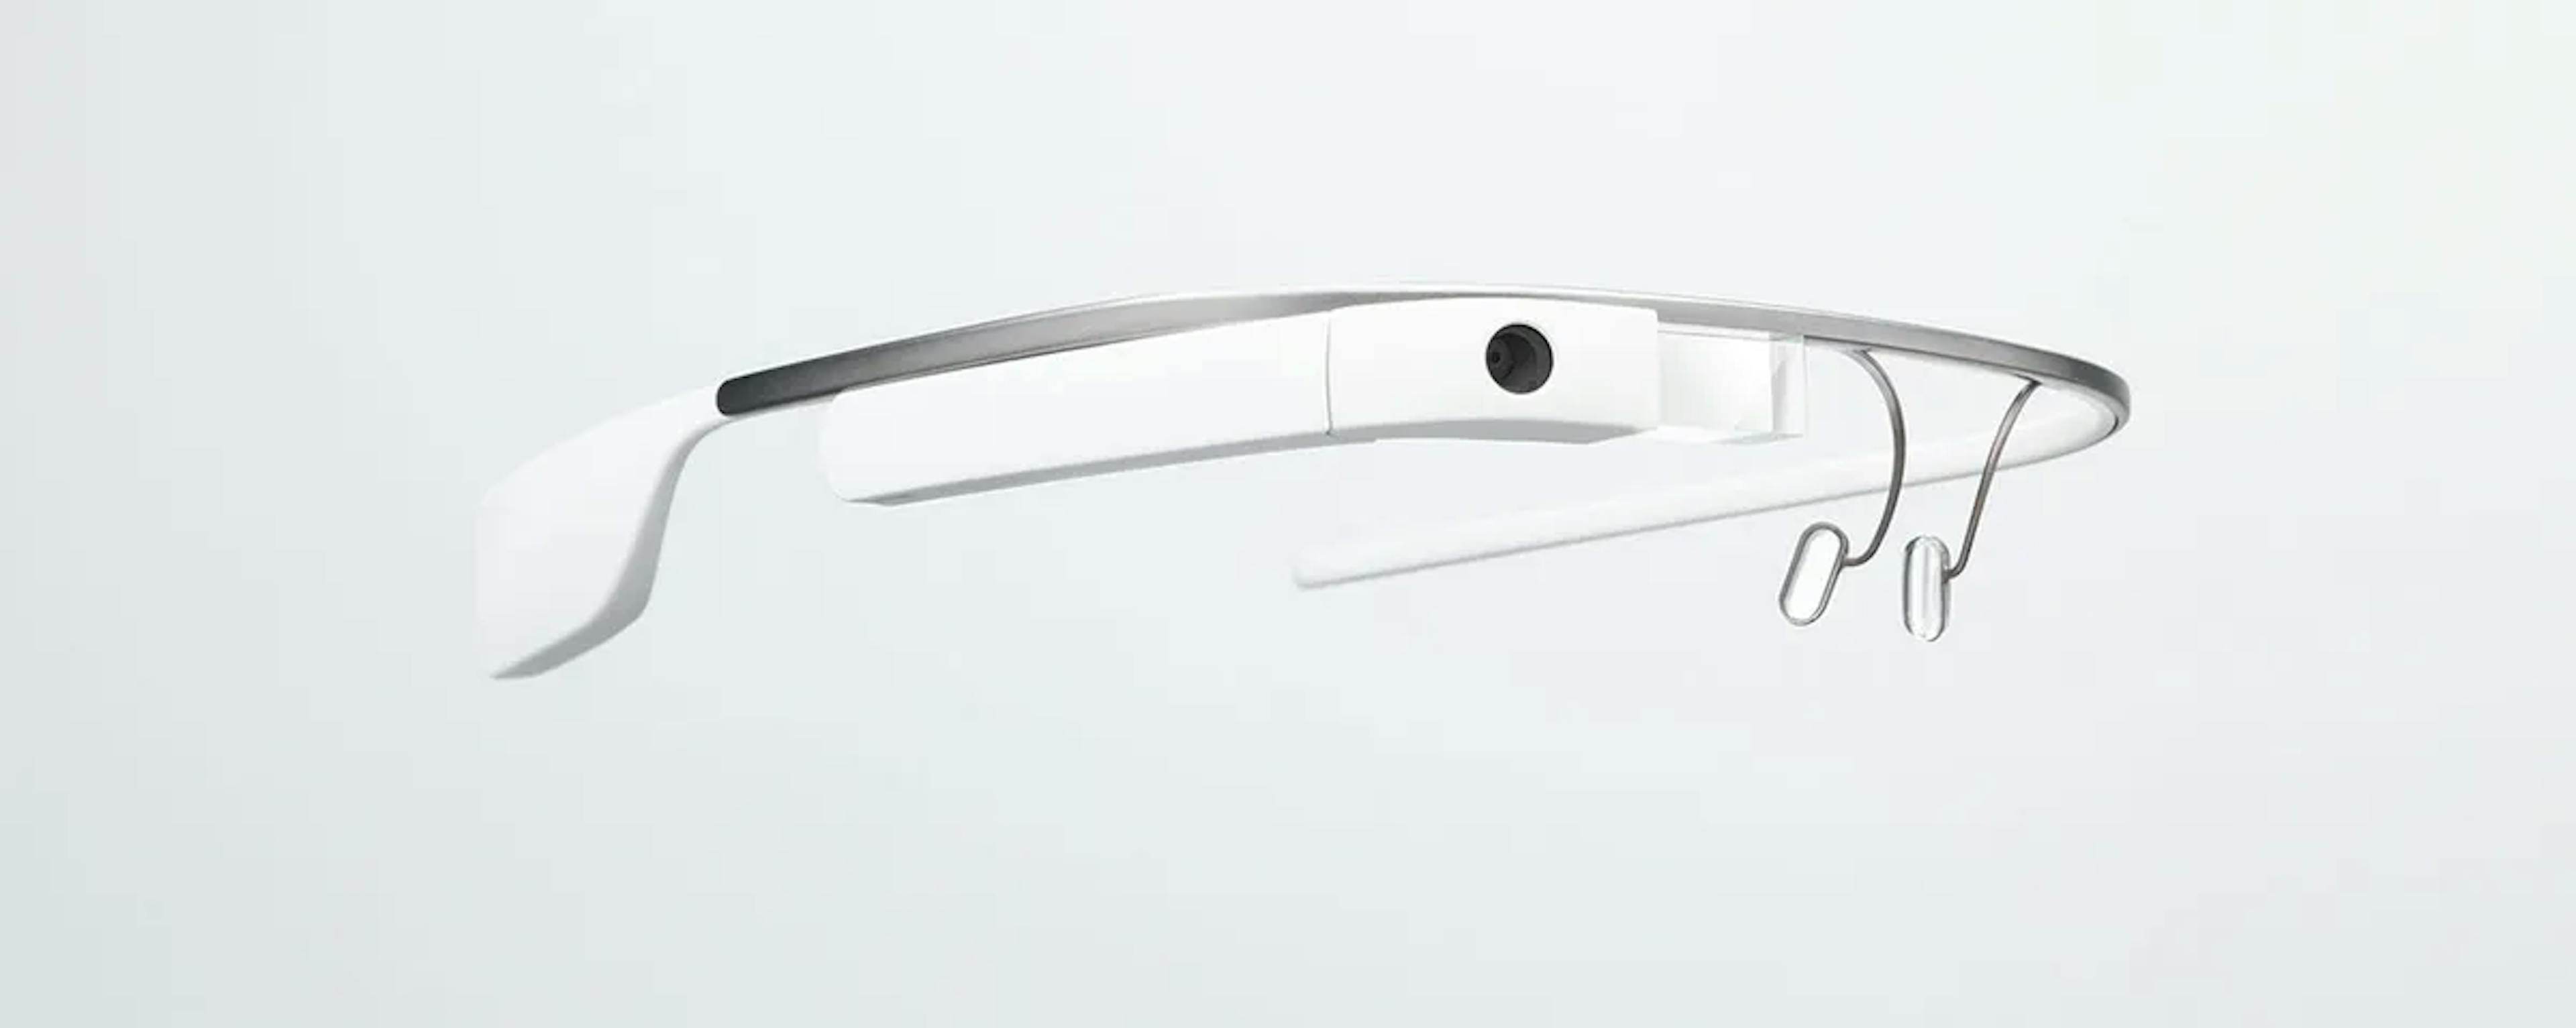  Söz konusu Google Glass